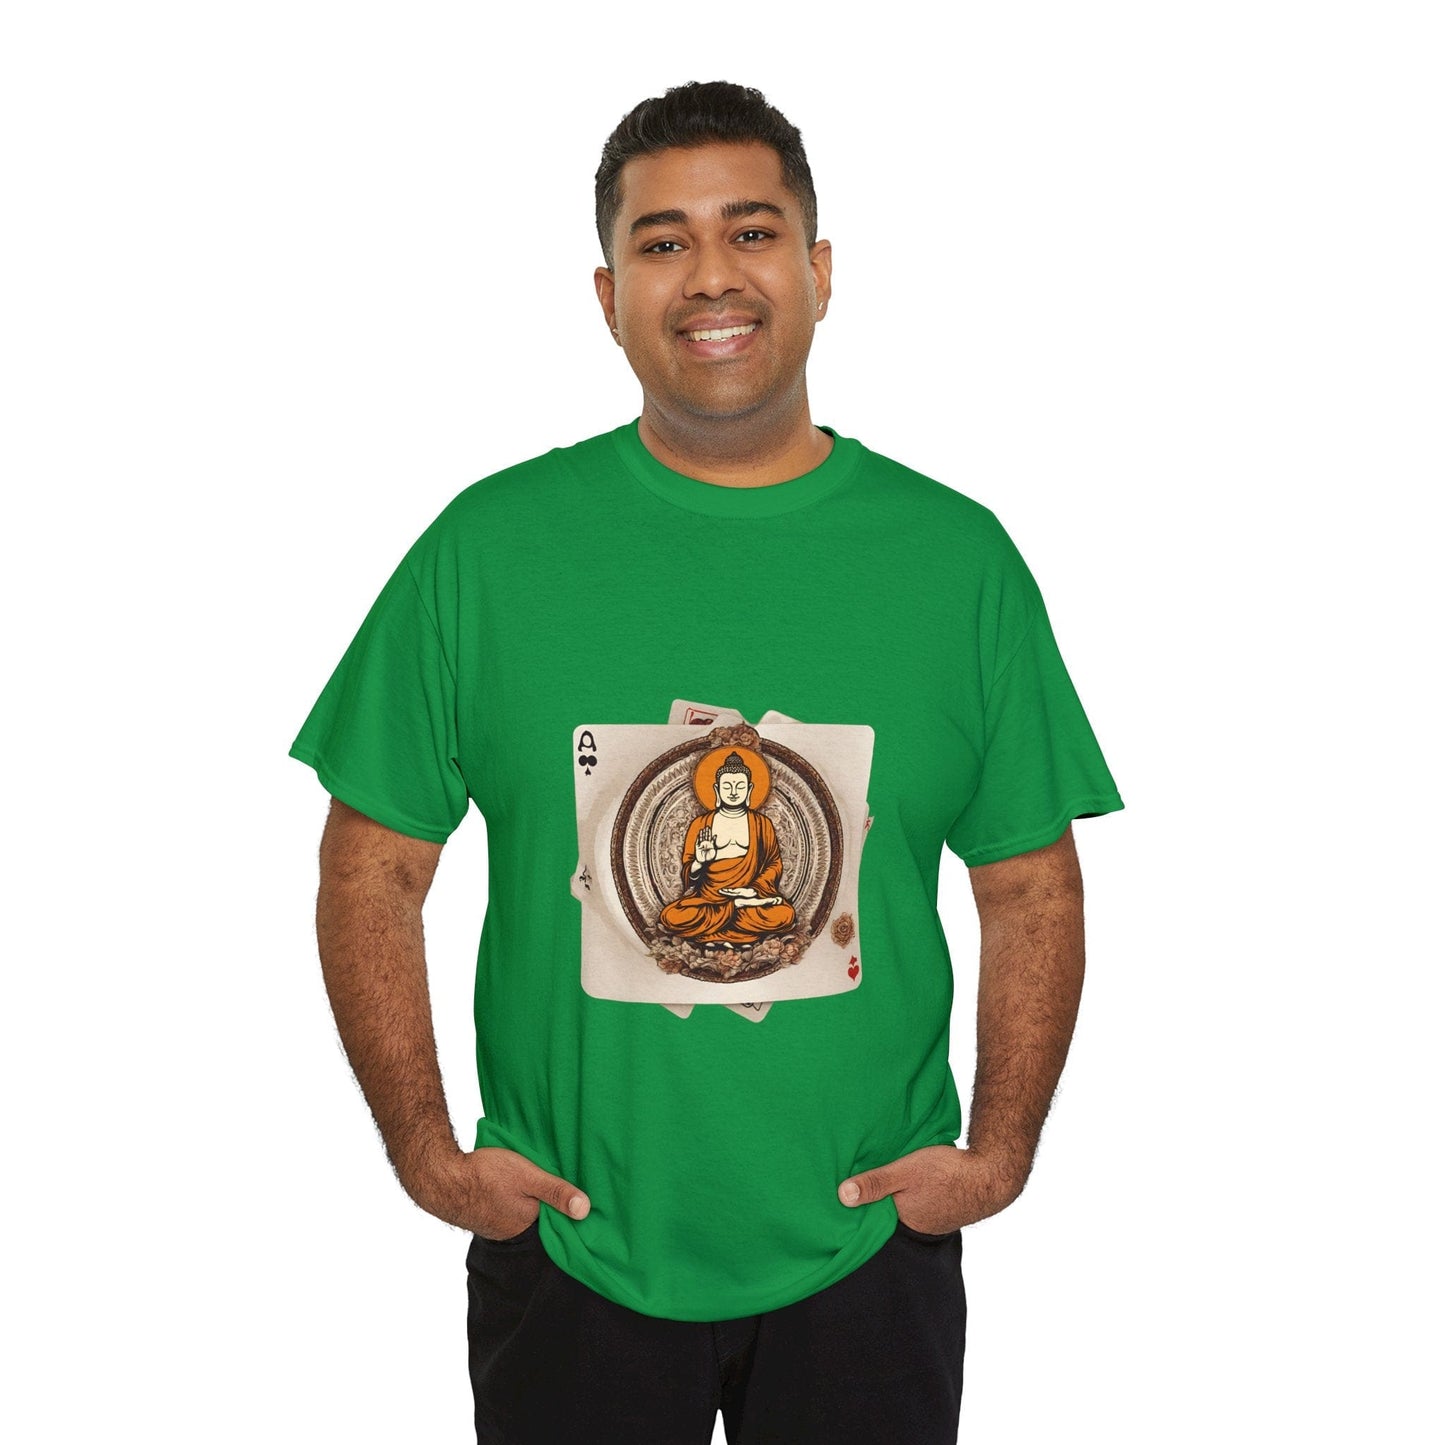 Camiseta de Buda Camisas de Buda frescas Estatua de Buda Camiseta gráfica vintage Camisa budista Camisas de yoga para hombres Mujeres Niños Juego de cartas Camisa Namaste Sabiduría Camiseta de algodón pesado unisex Flashlander